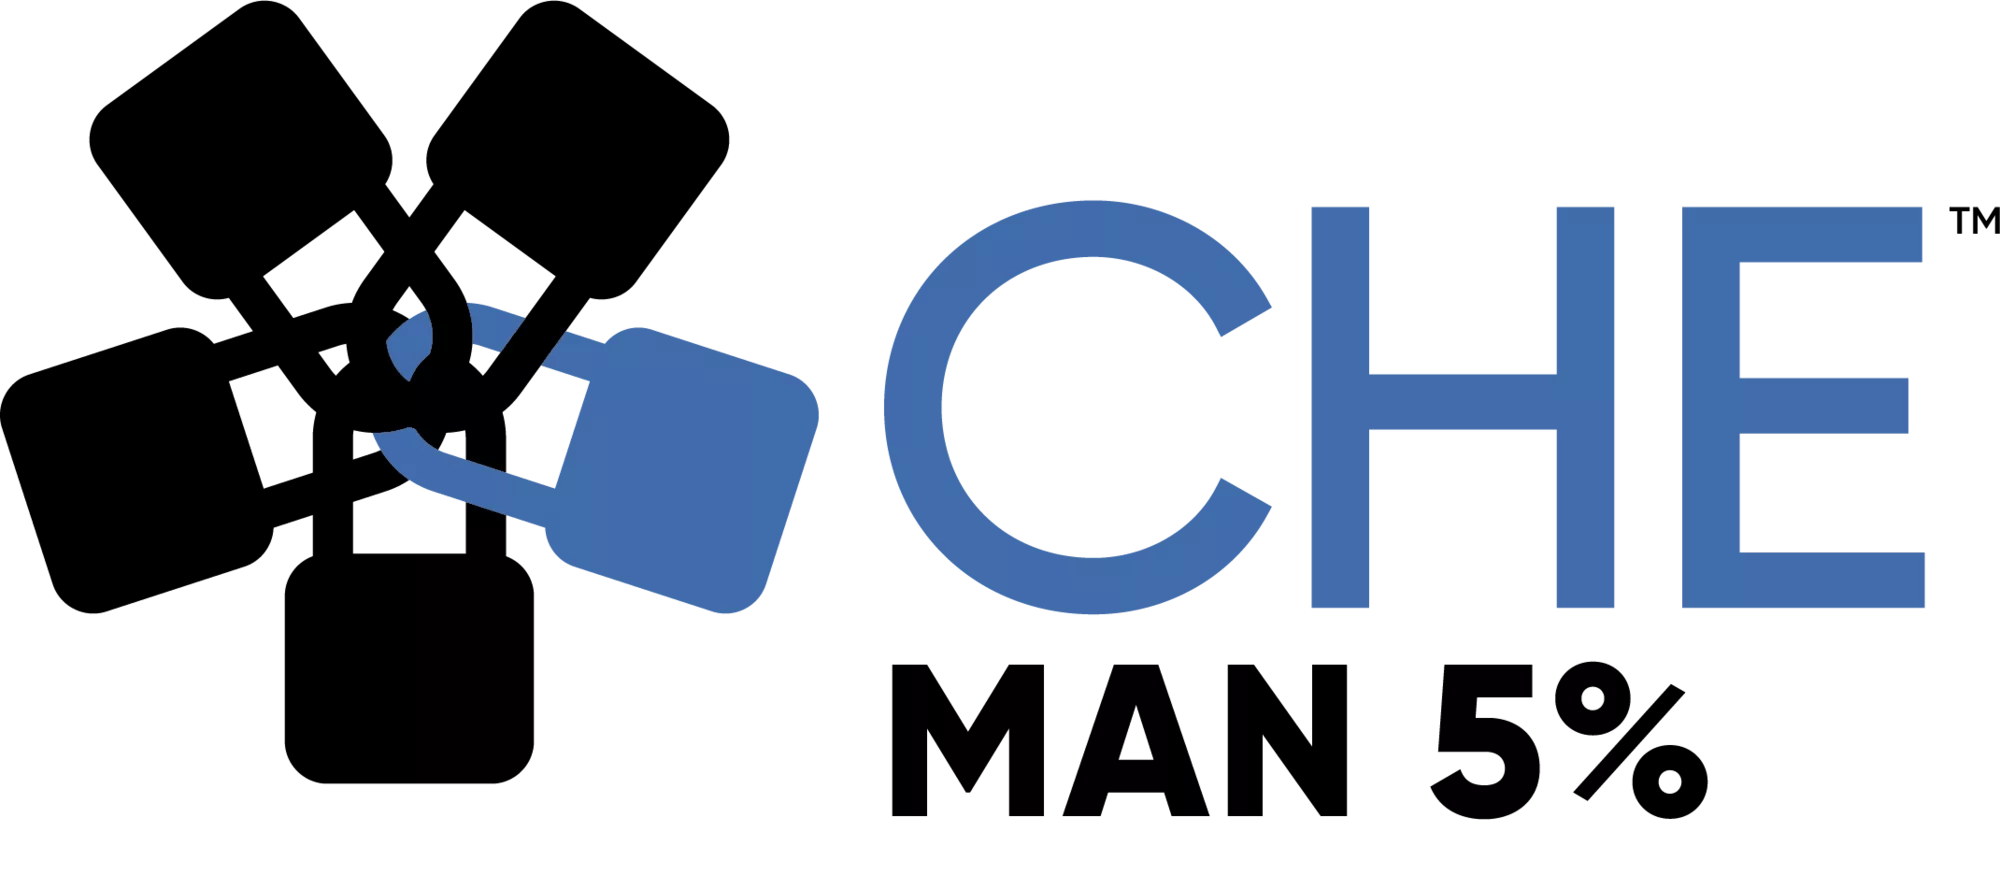 Che - Man 5%